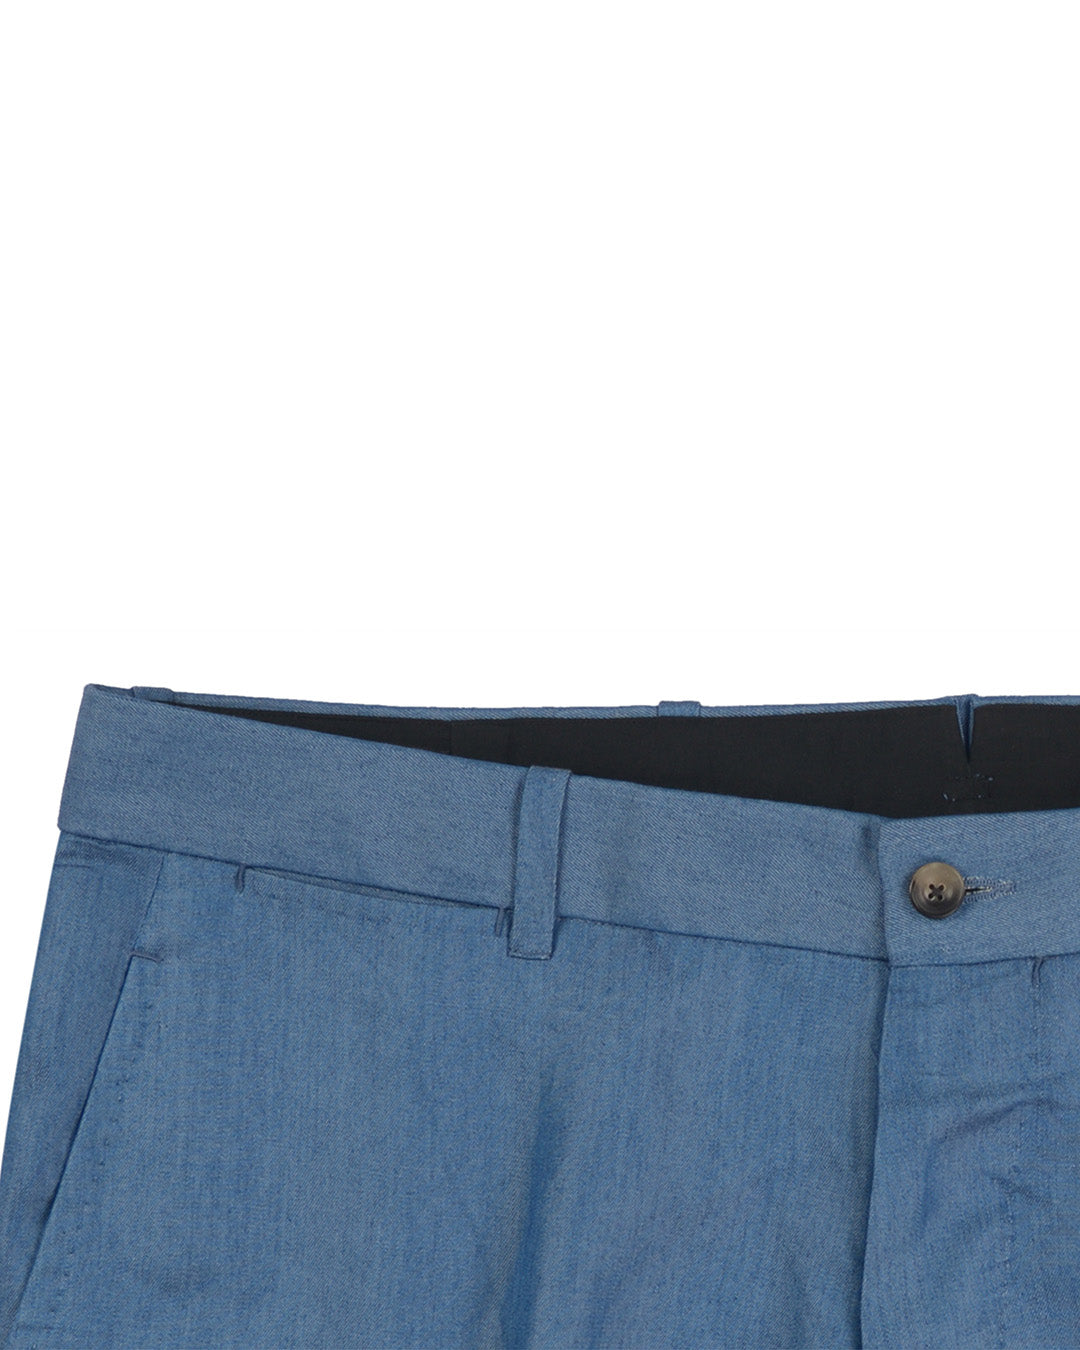 Blue Plain Cotton Pant